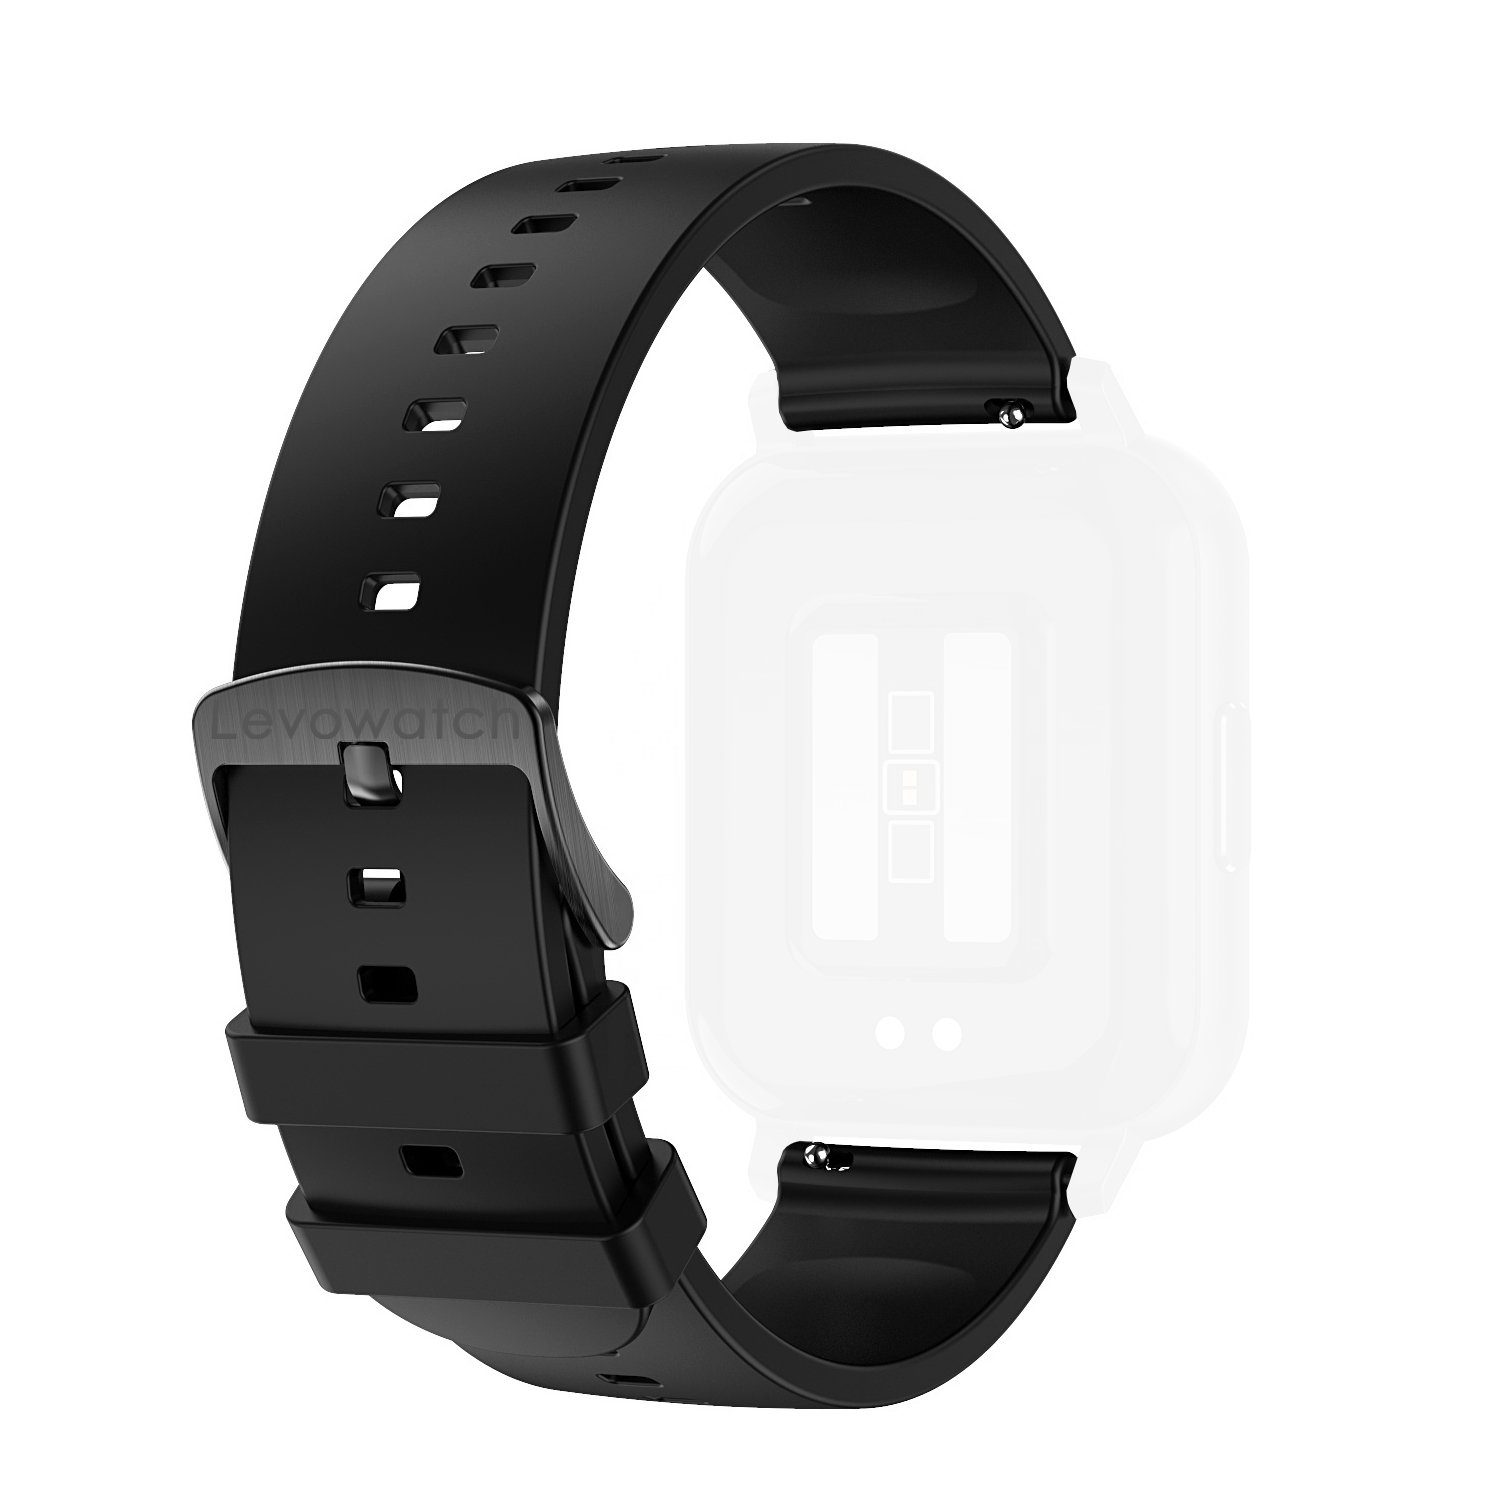 L10 für Ersatz/-Wechselarmband, alle 20mm Smartwatch-Armband ST20, Levowatch (2xStk) Uhren/Smartwatches,